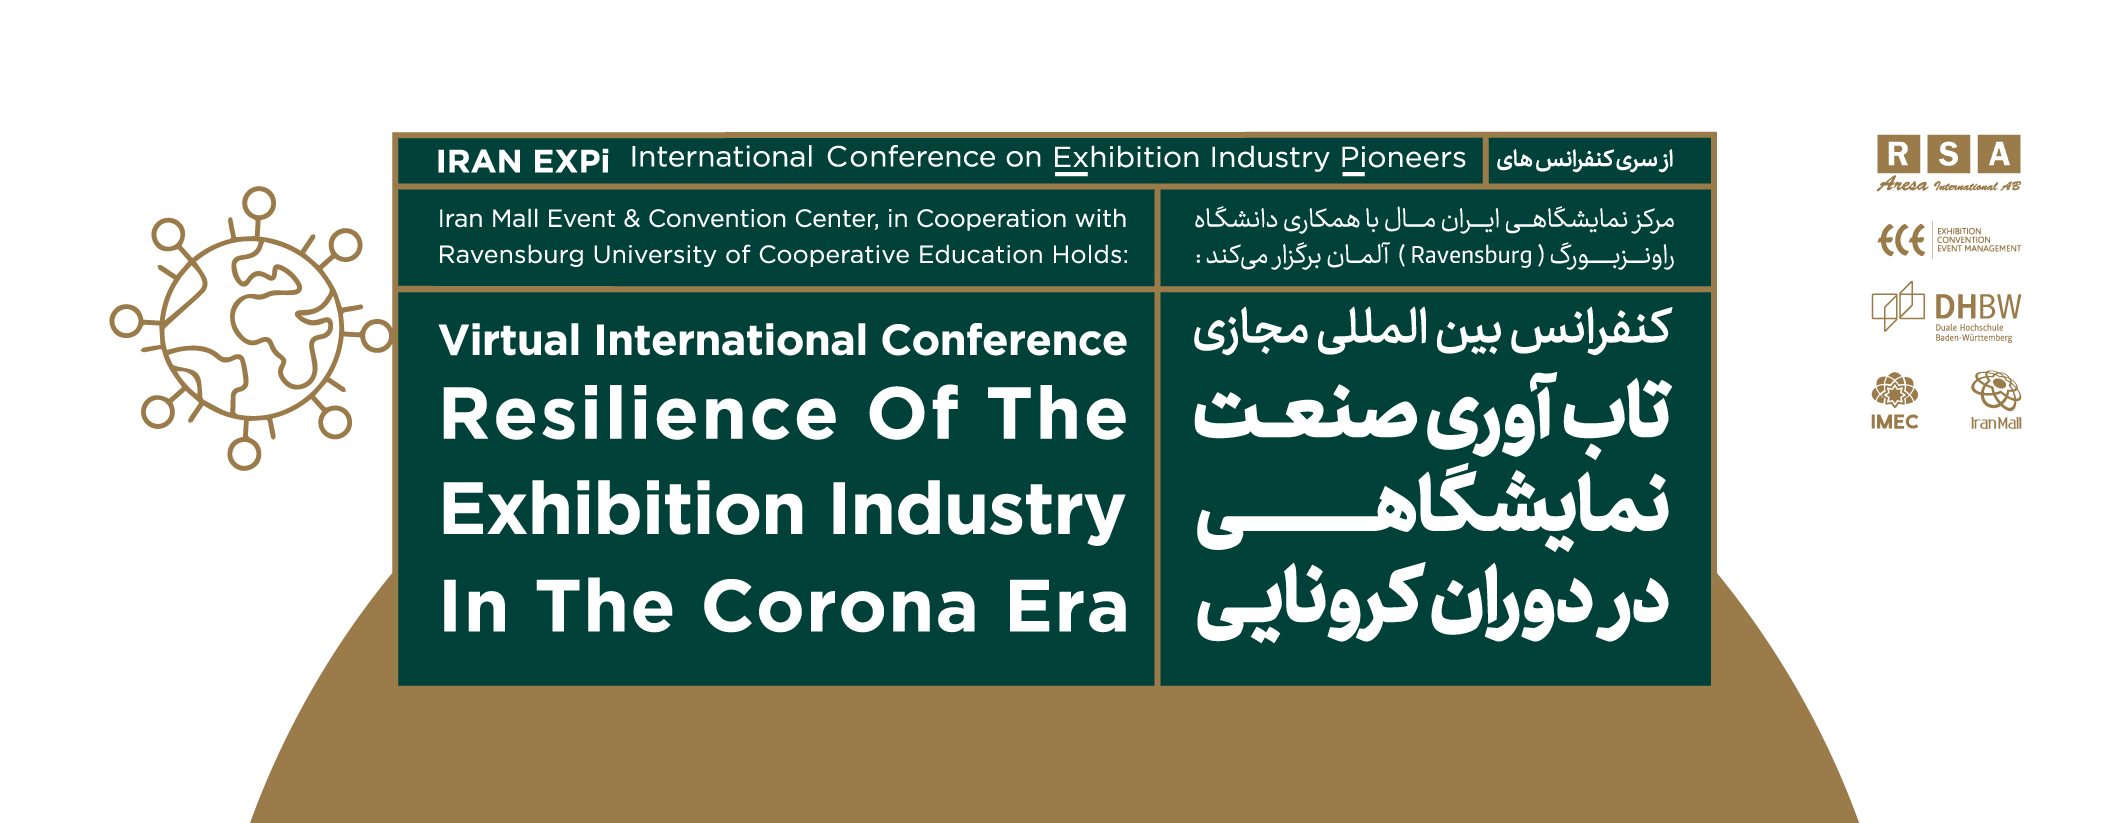 La conférence internationale virtuelle sur la « Résilience de l'industrie des expositions à l'ère de Corona »